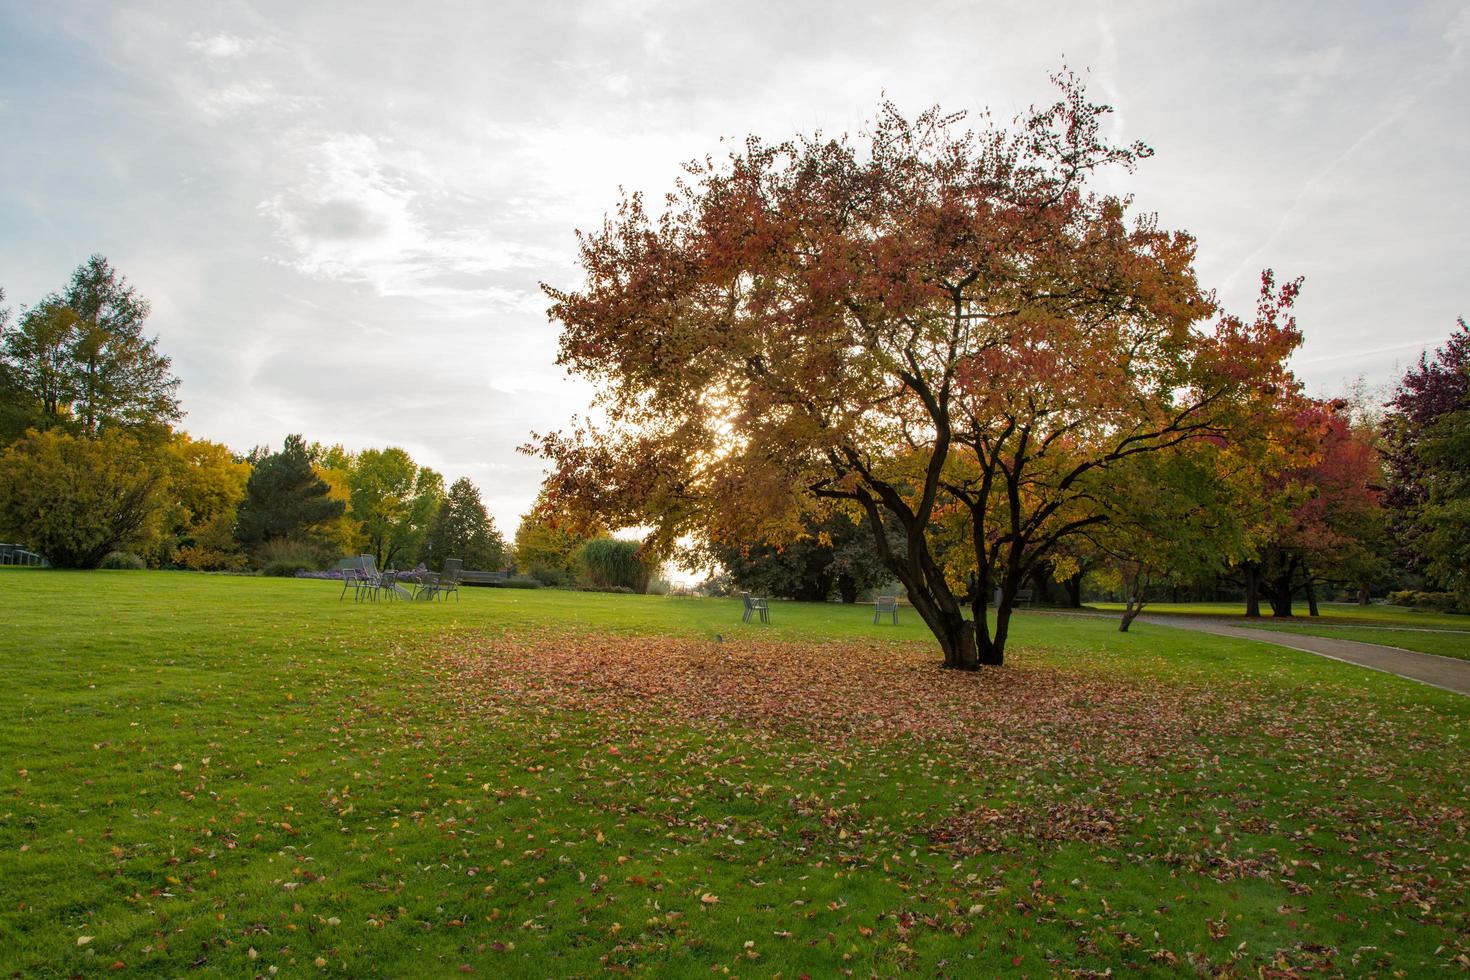 colorful landscape of sunny autumn park photo